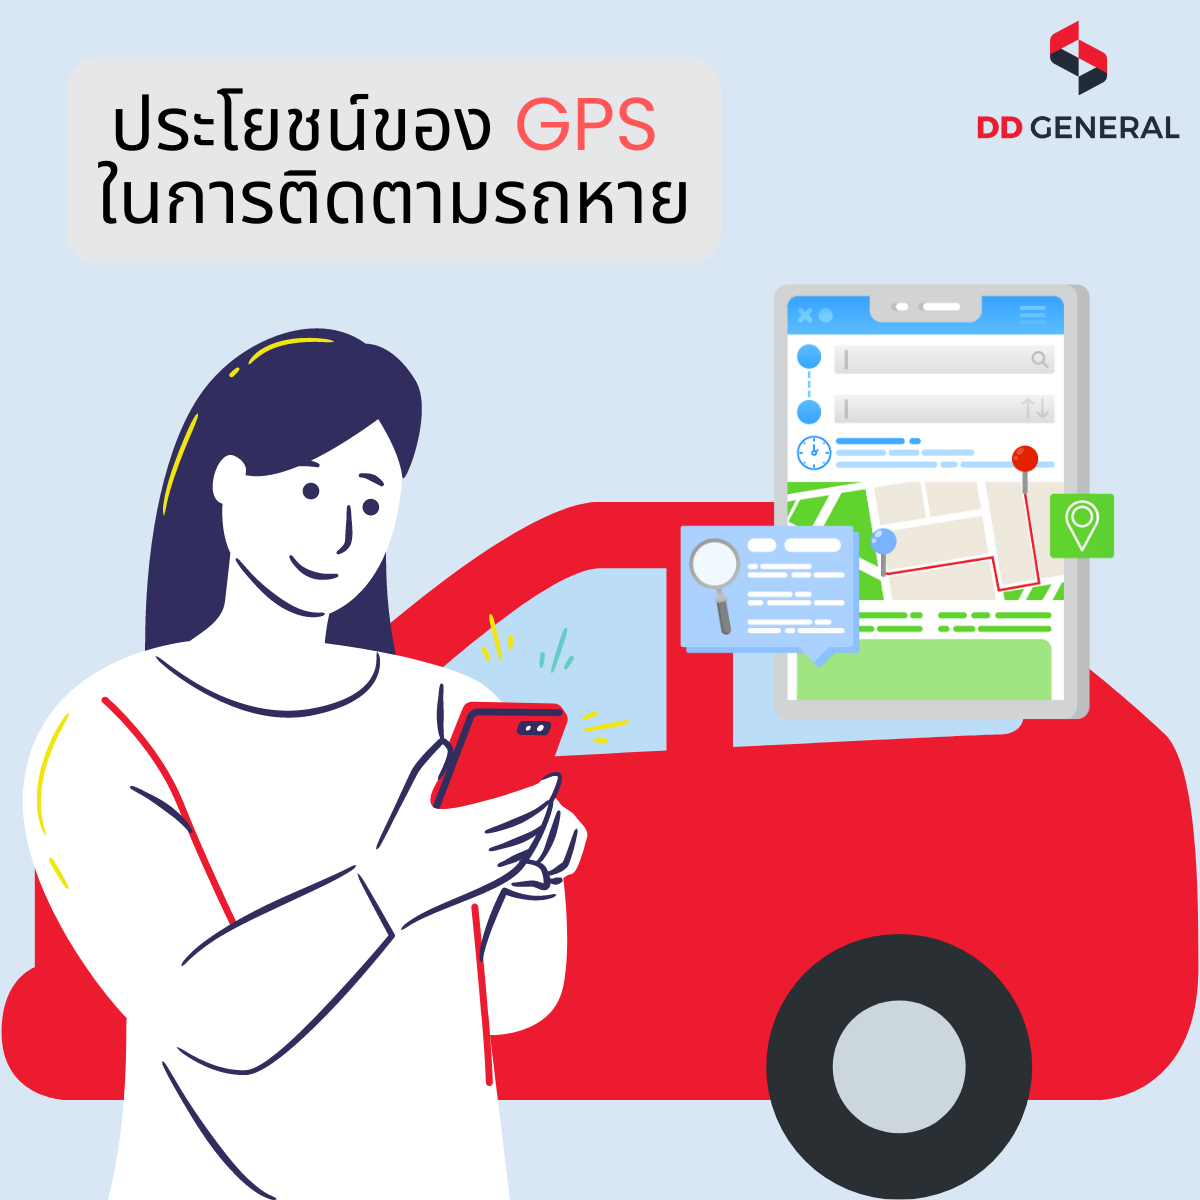 ประโยชน์ของ GPS ในการติดตามรถหาย